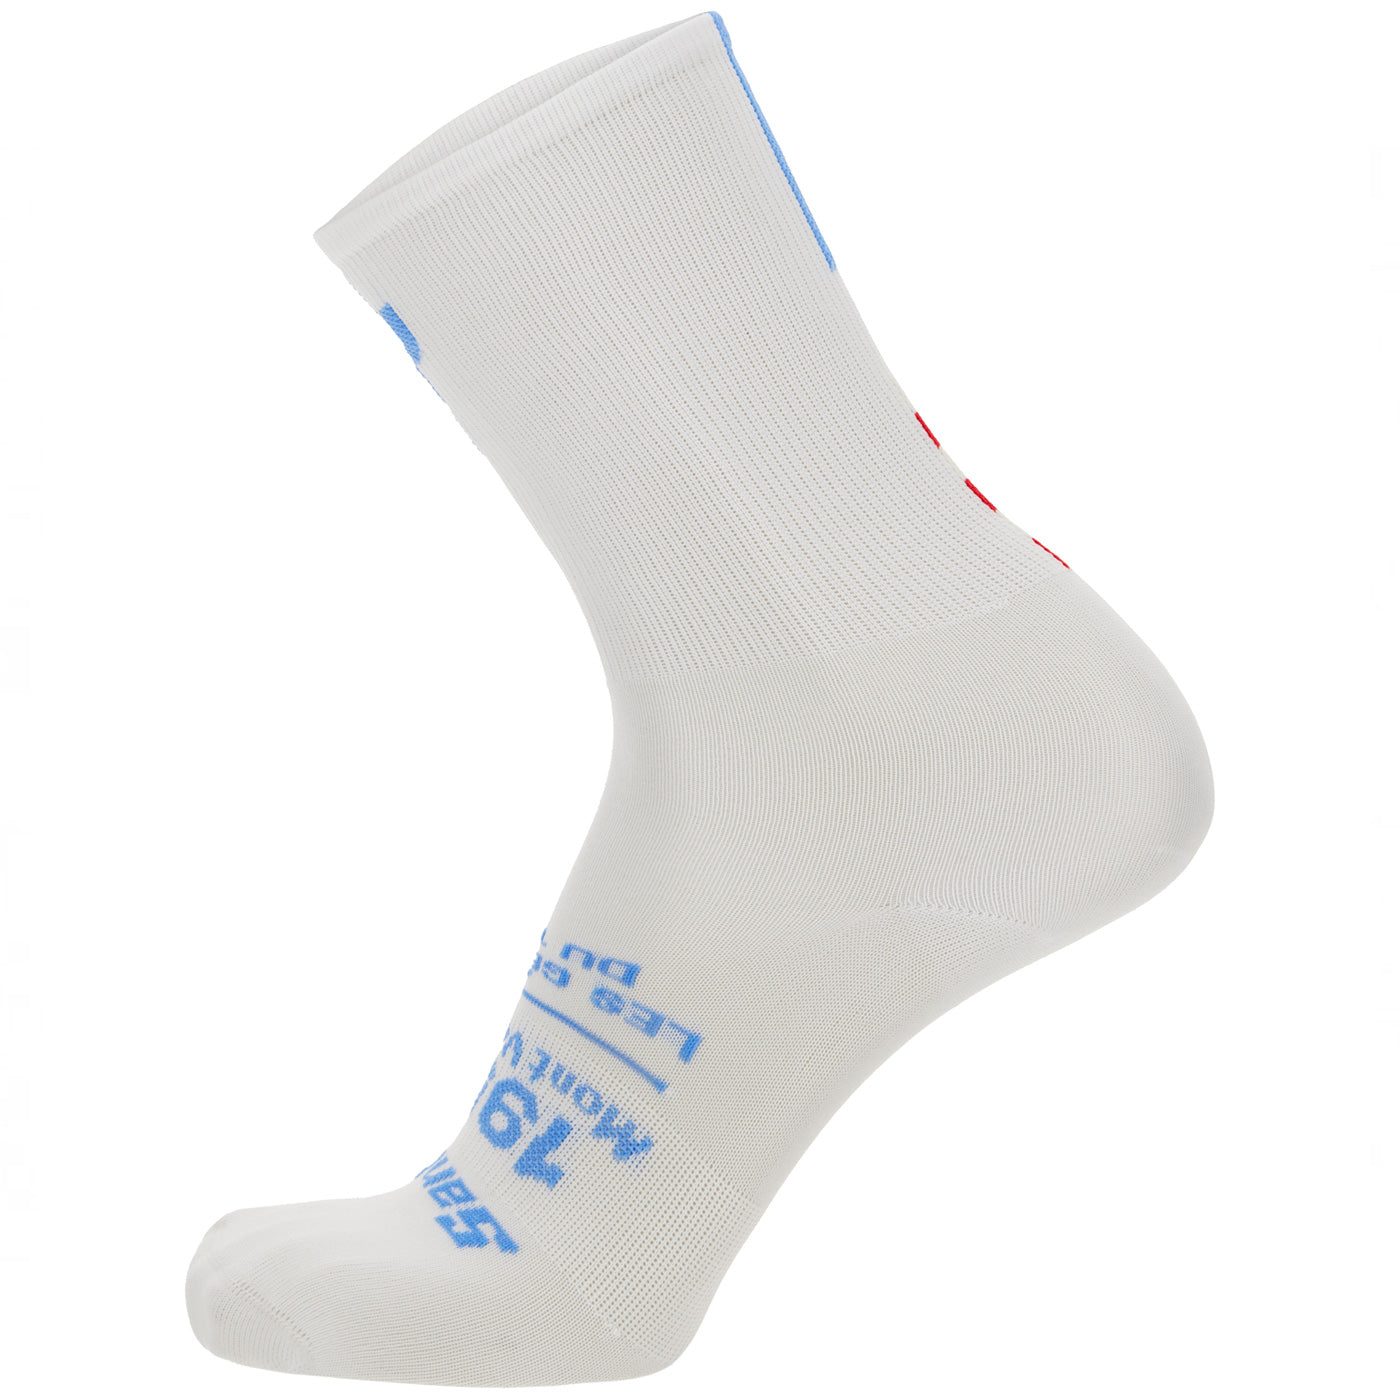 Tour de France Maillot Jaune socks - Mont Ventoux